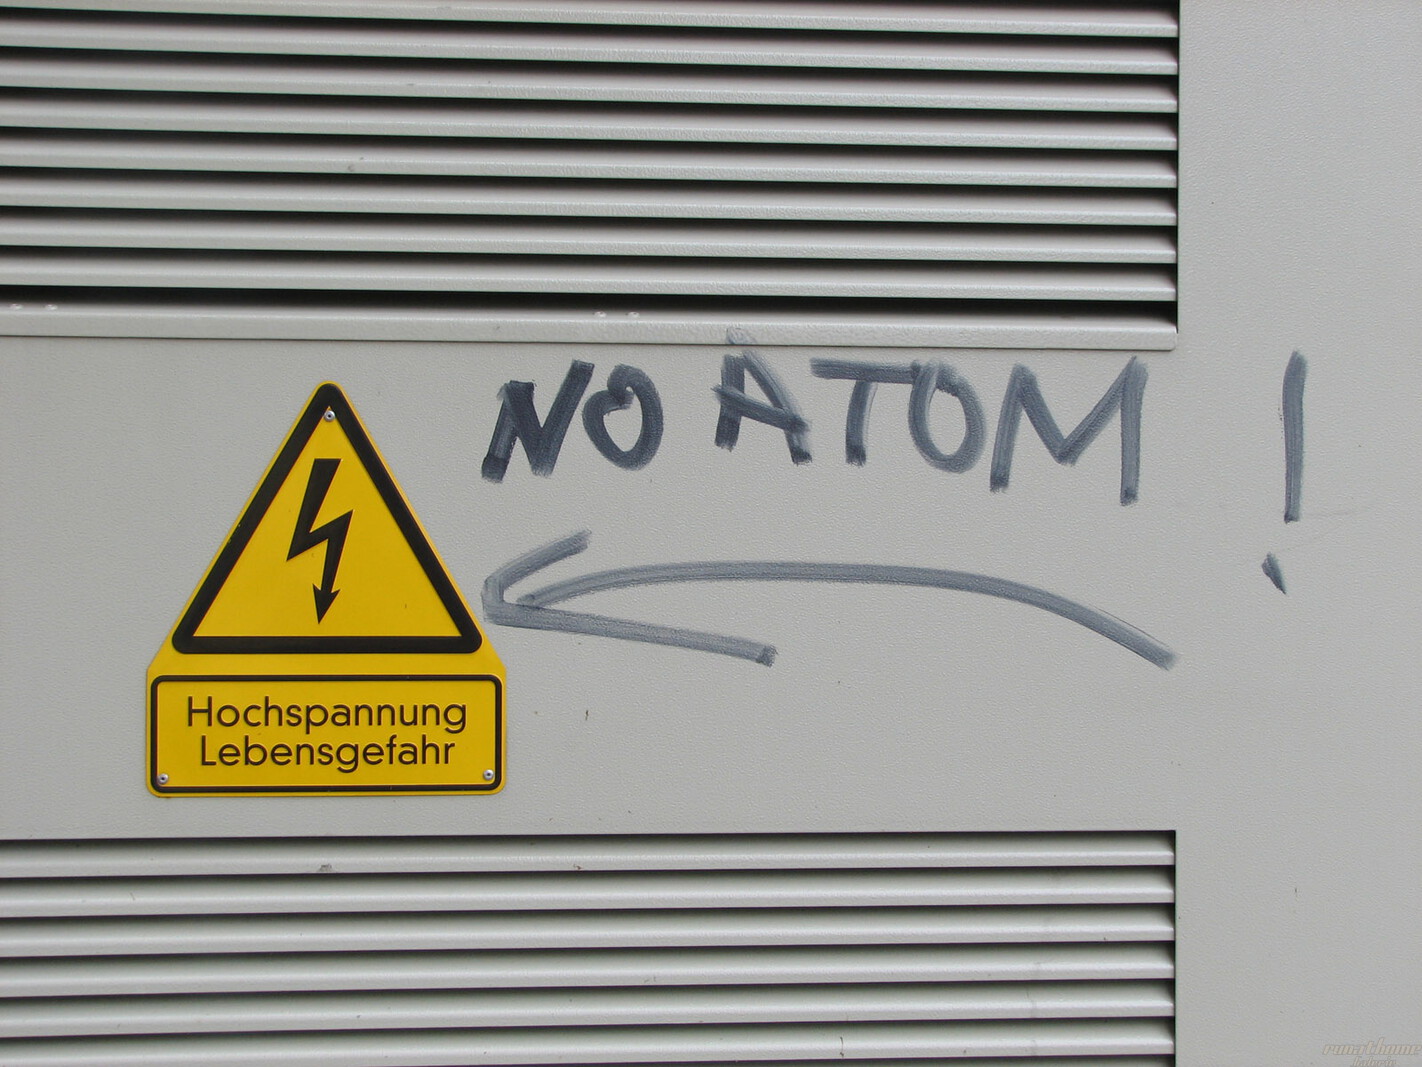 No Atom?